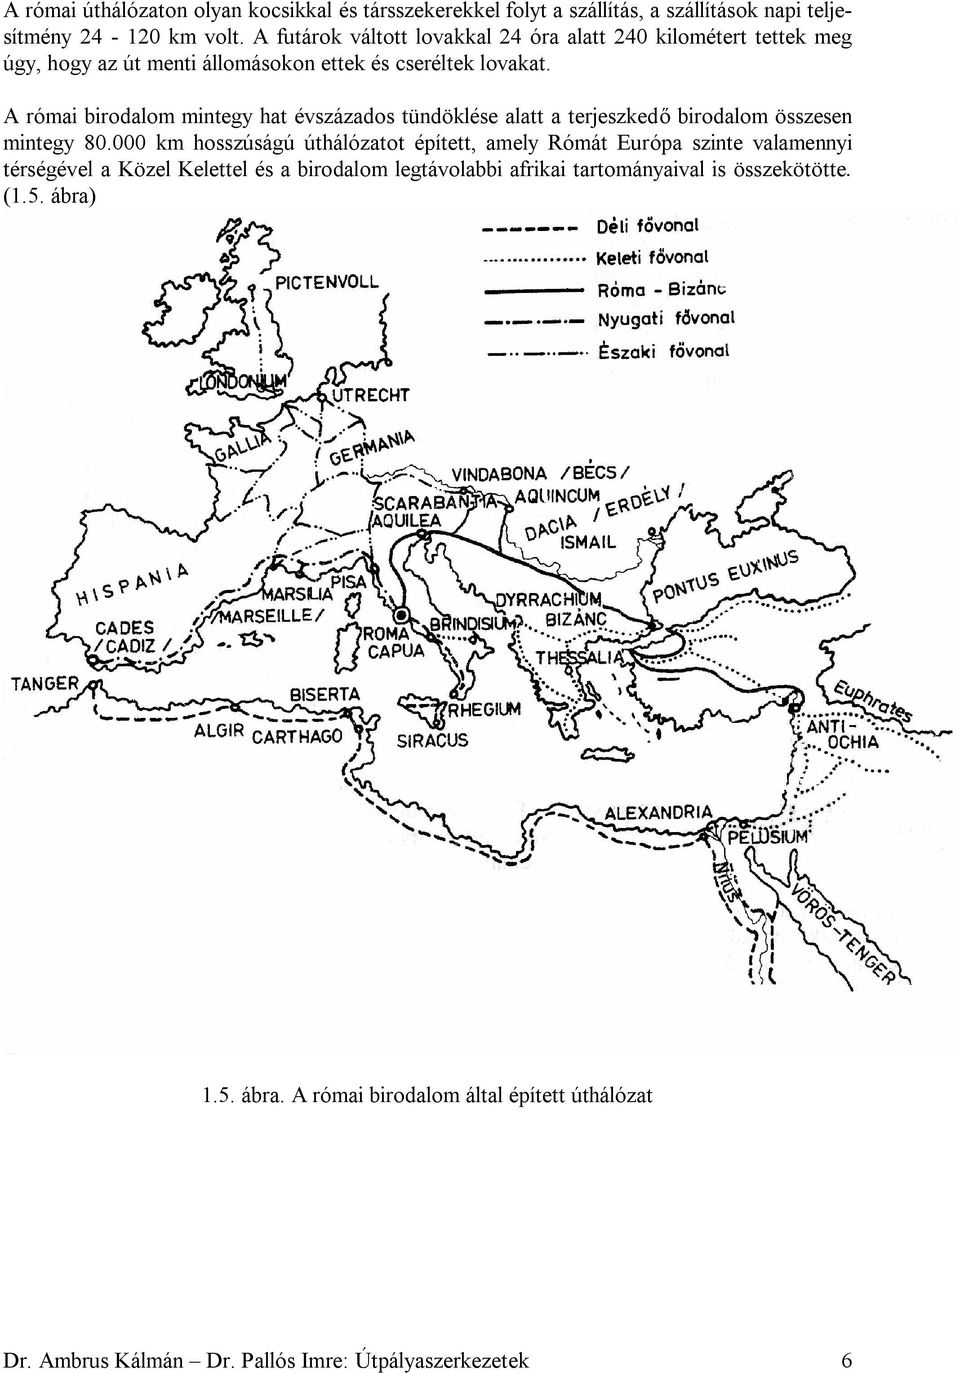 A római birodalom mintegy hat évszázados tündöklése alatt a terjeszkedő birodalom összesen mintegy 80.